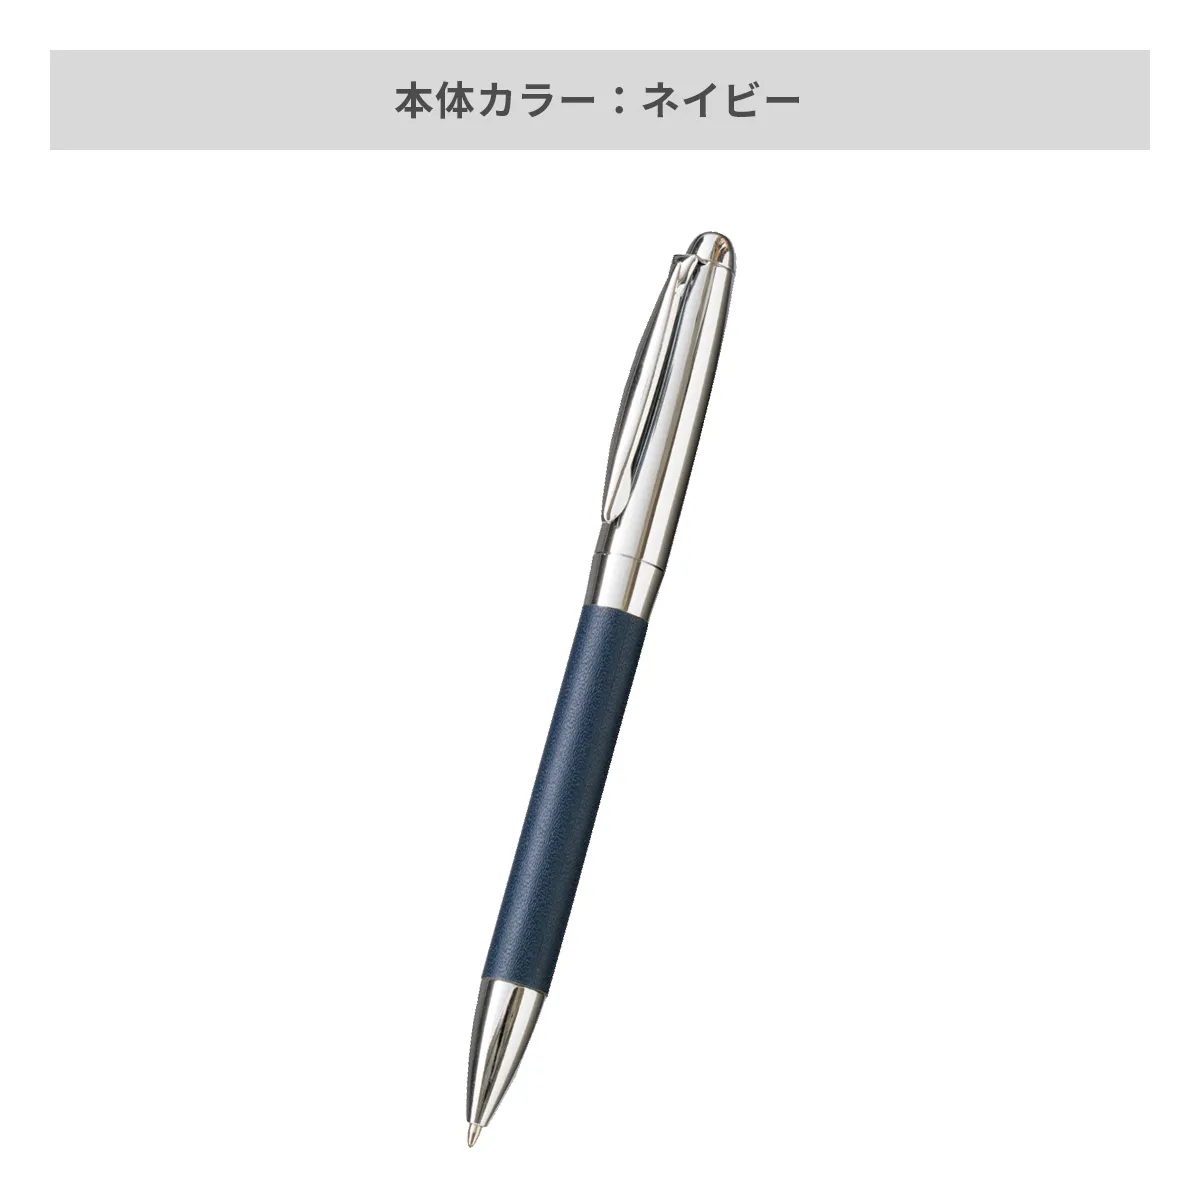 レザースタイルメタルペン【名入れボールペン / パッド印刷】 画像4